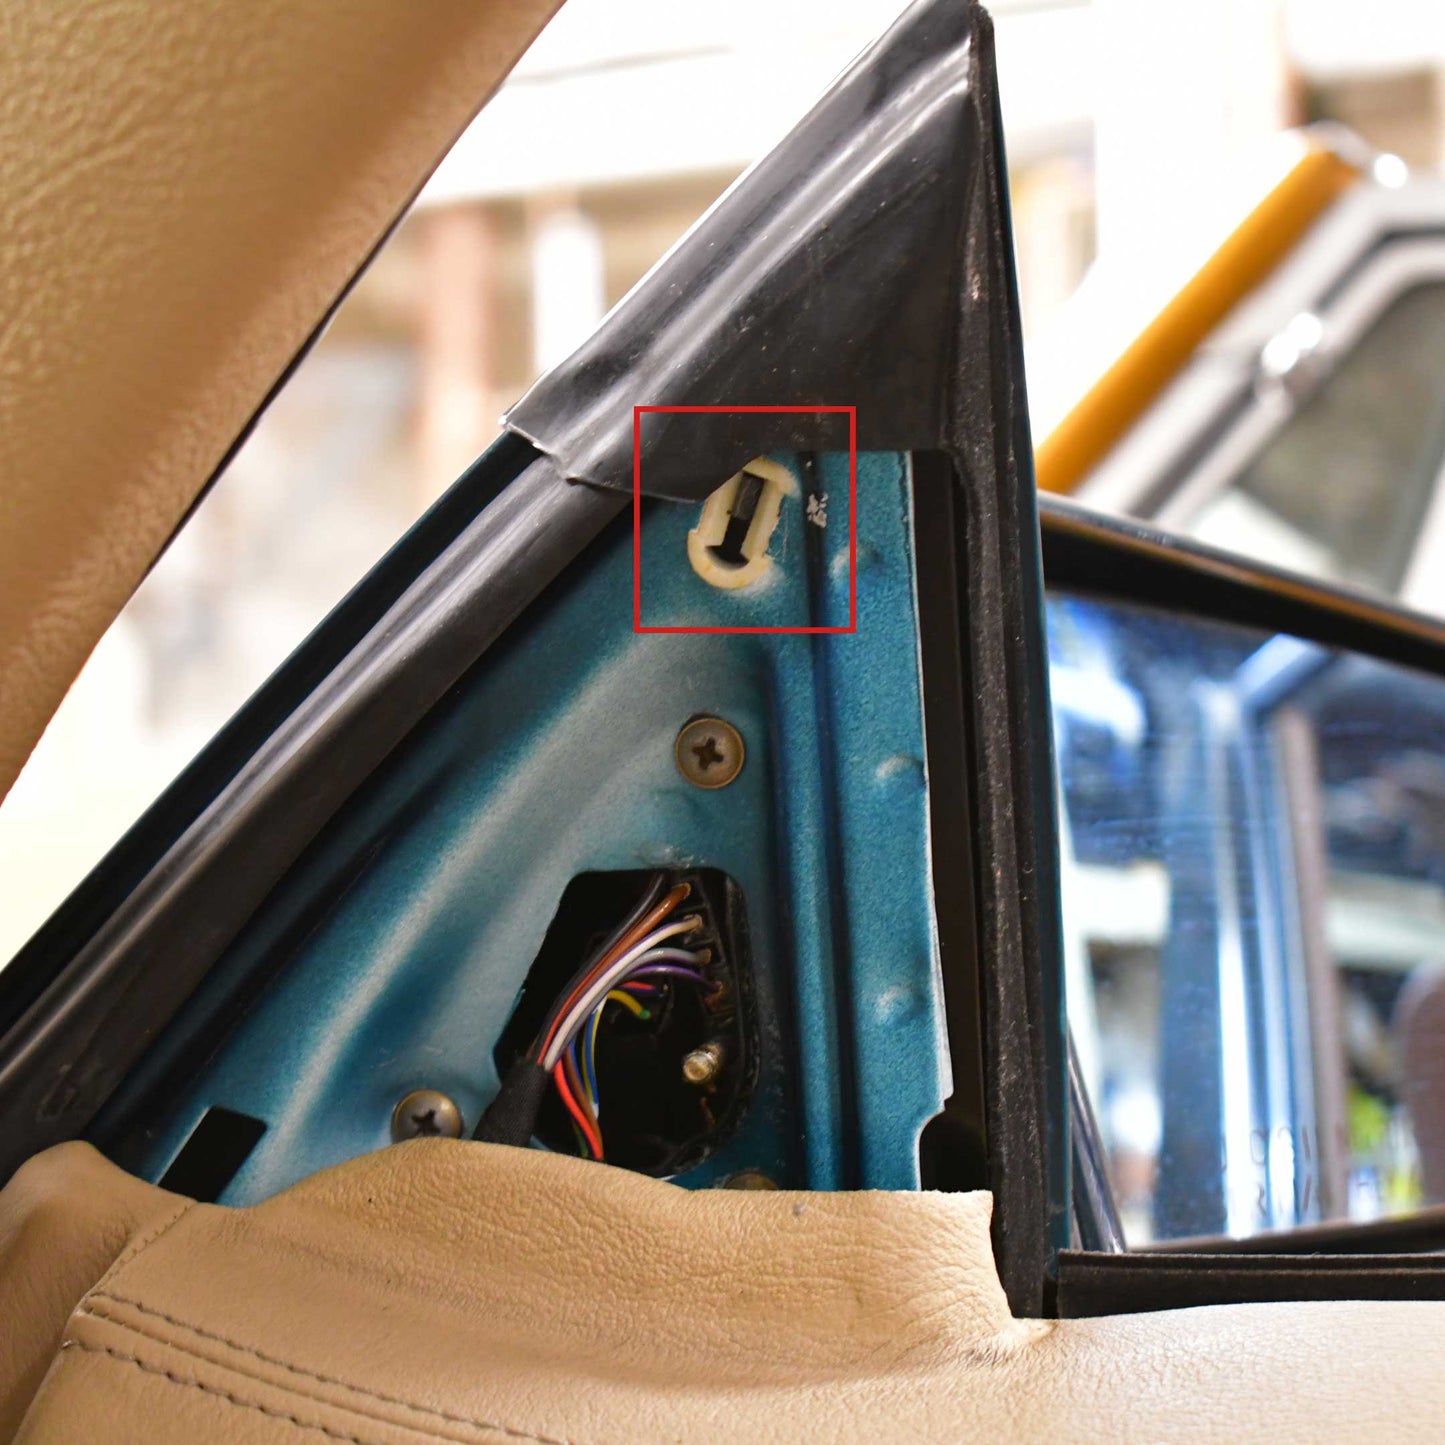 Mercedes R129 Side View Mirror Trim Fastener Clip Location